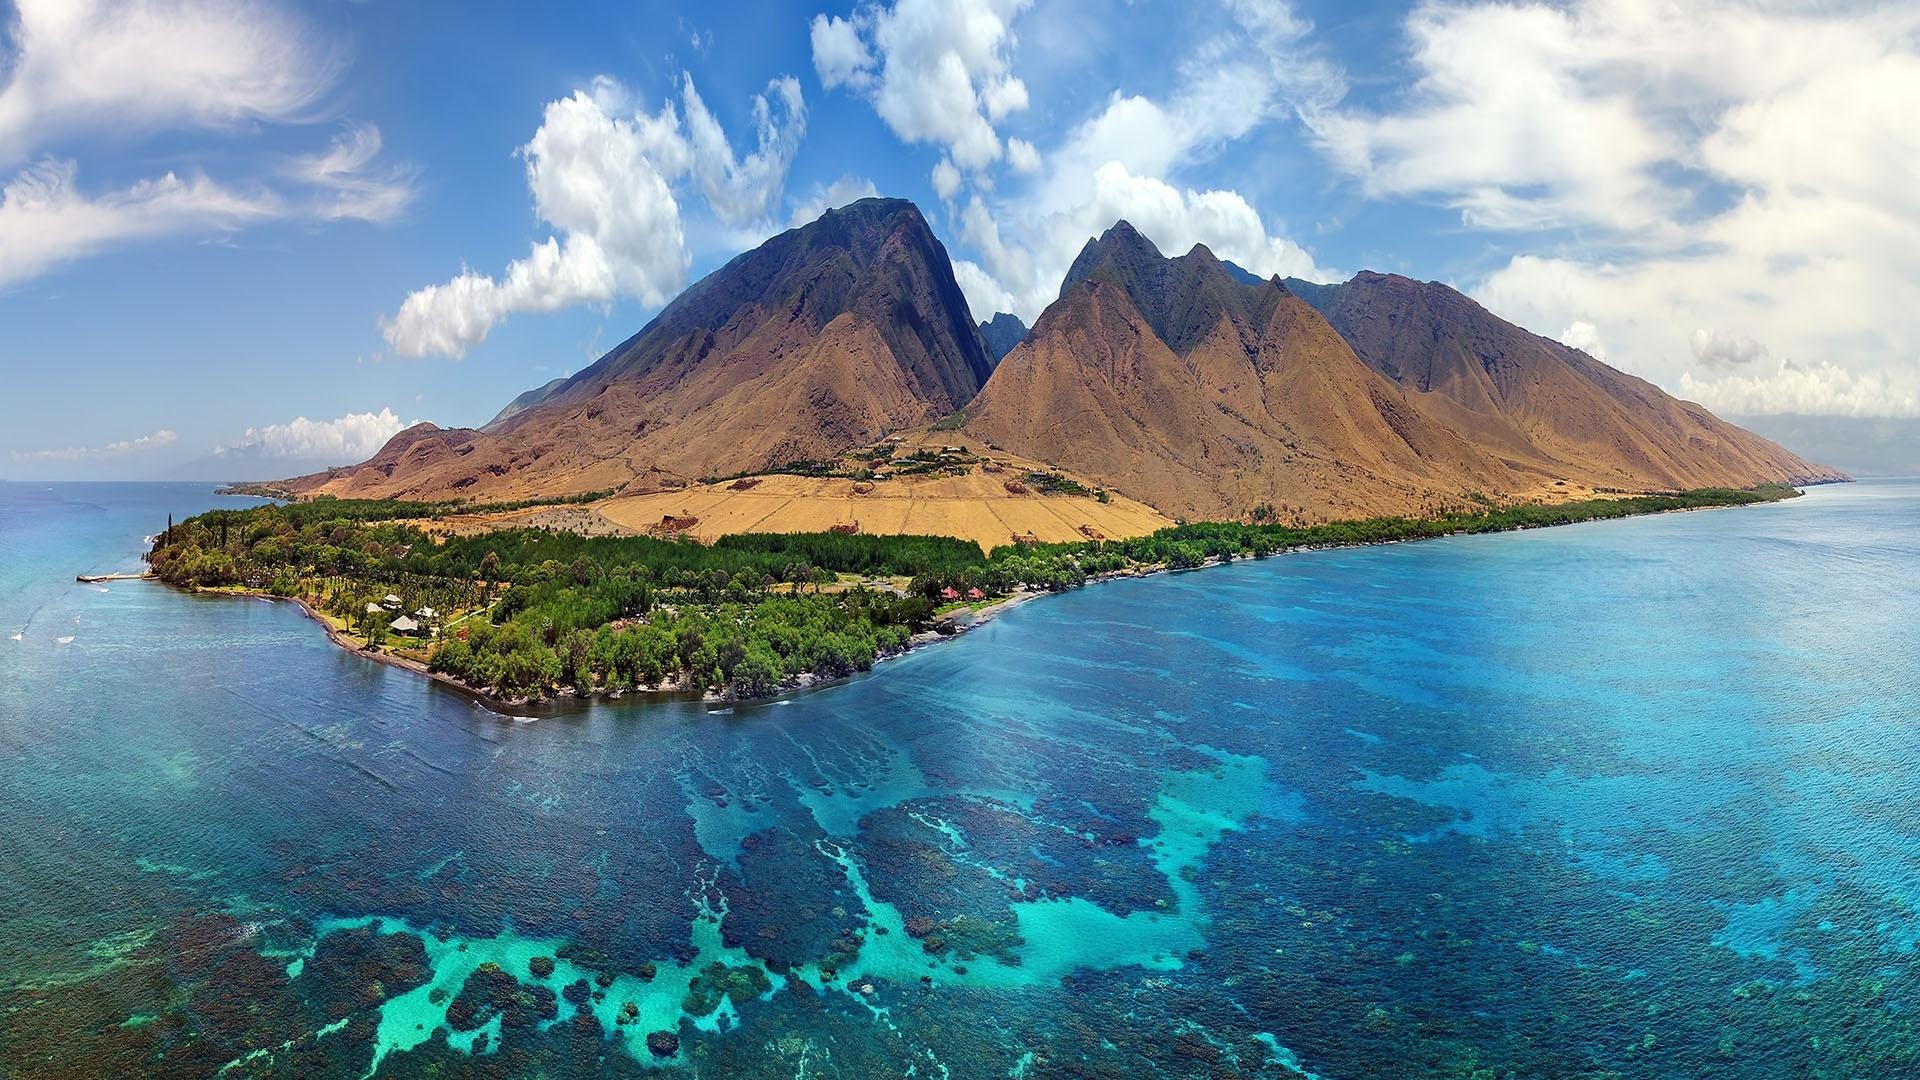 Islands of Wonder, Hawaii's beauty, Natural wonders, Documentary series, 1920x1080 Full HD Desktop